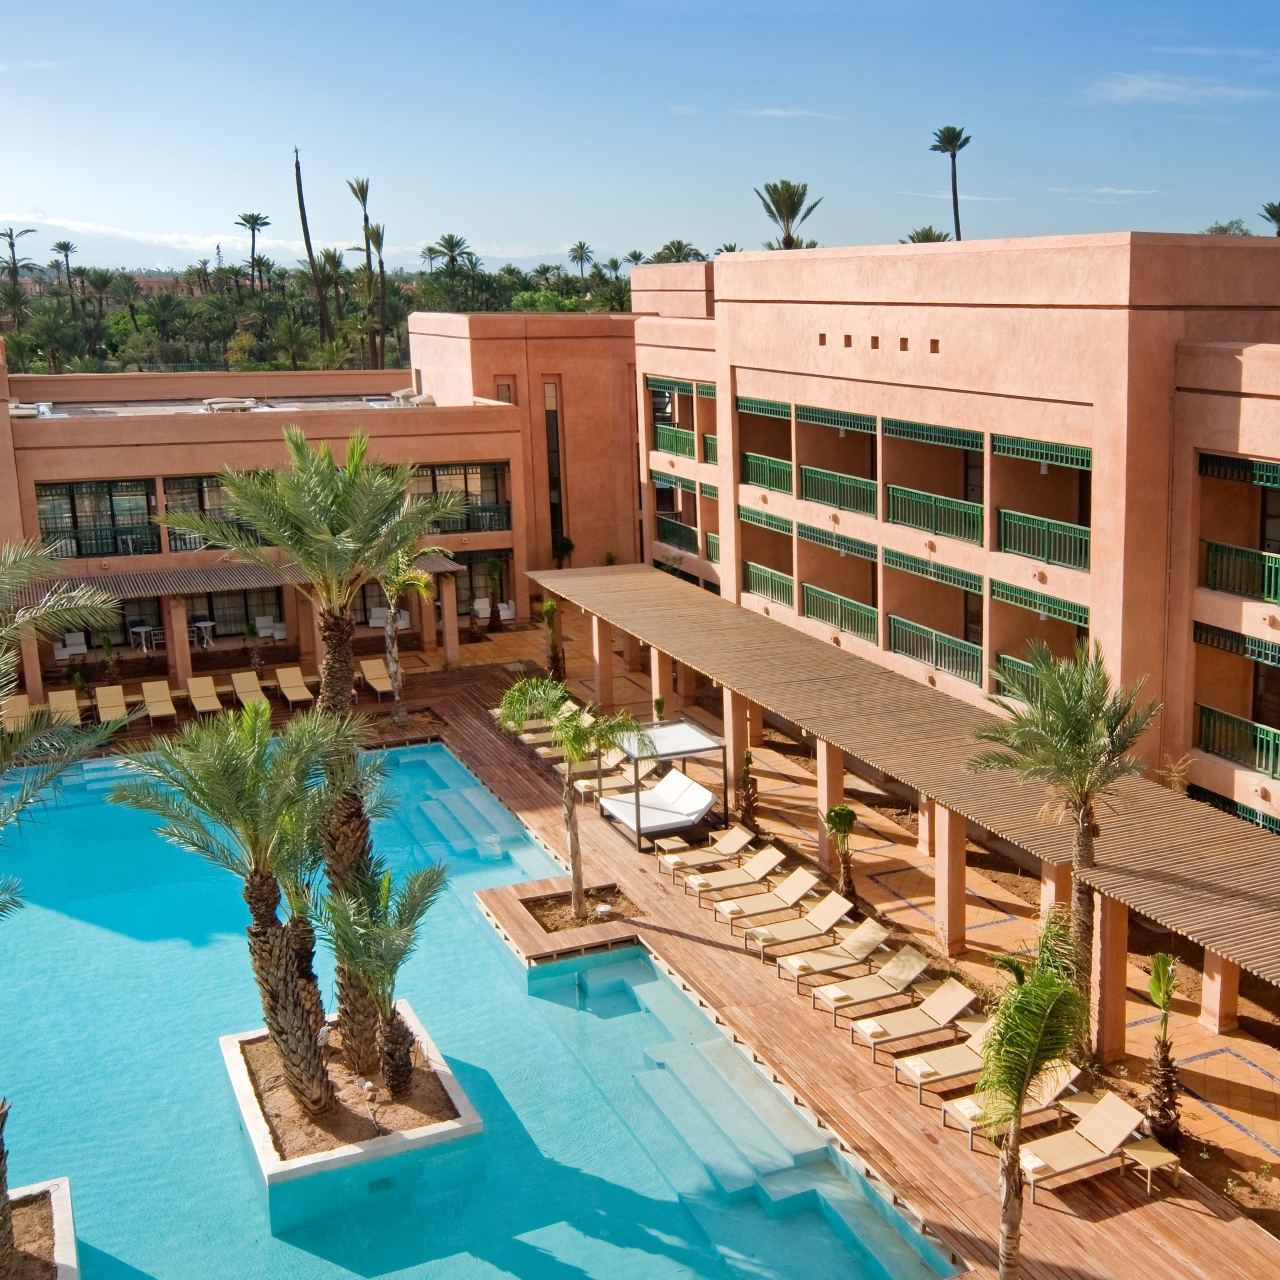 HOTEL DU GOLF - 5 HRS star hotel in Marrakech (Marrakech)